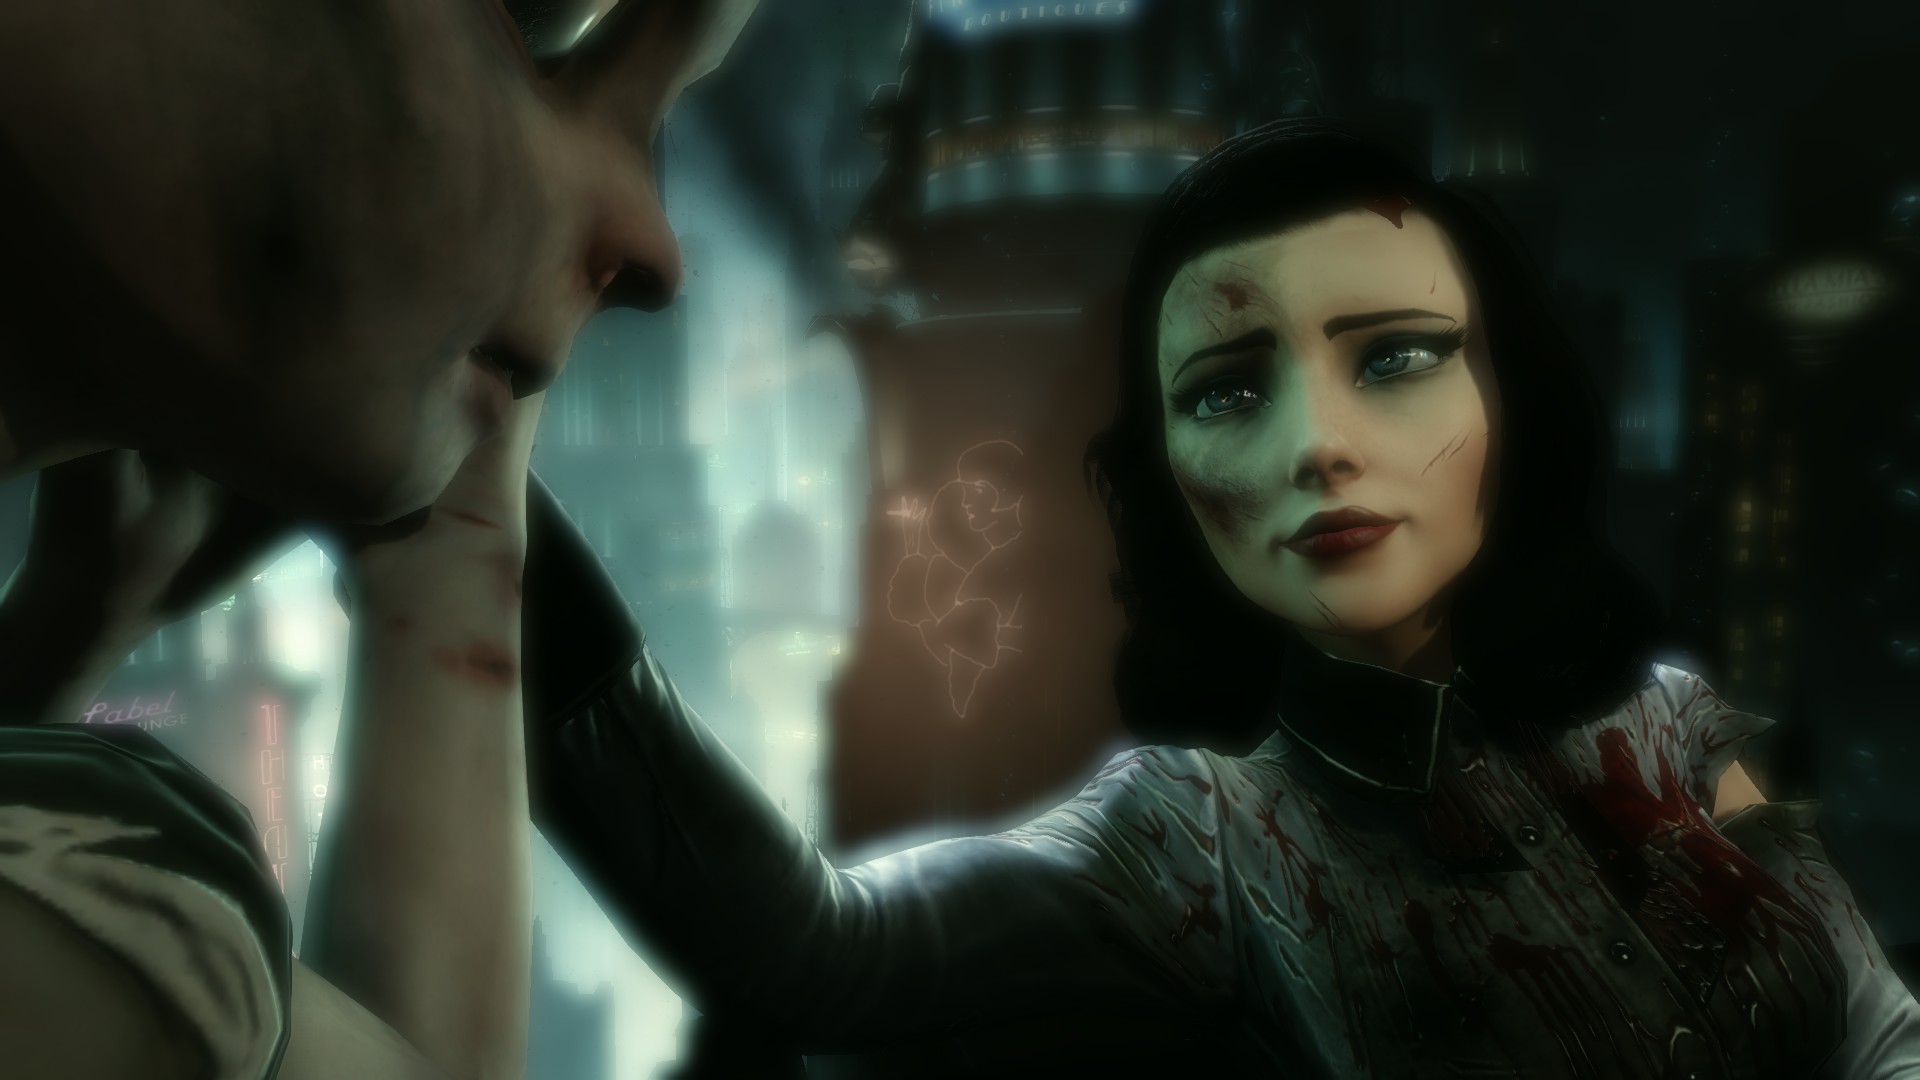 Video Game BioShock Infinite: Burial at Sea HD Wallpaper